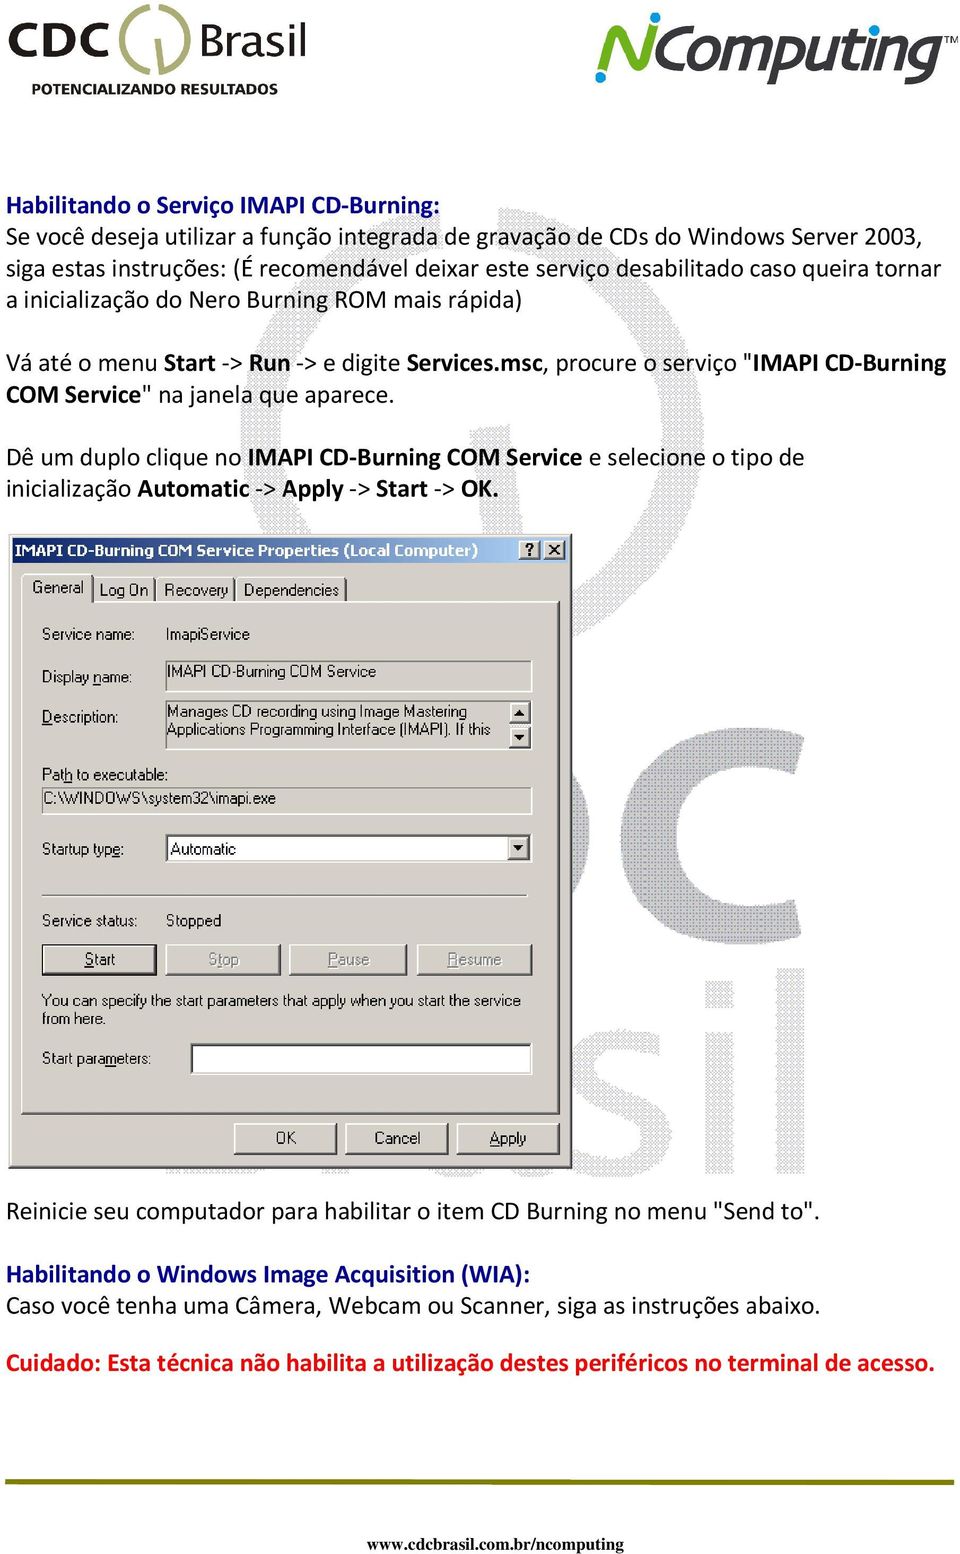 Dê um duplo clique no IMAPI CD-Burning COM Service e selecione o tipo de inicialização Automatic -> Apply -> Start -> OK. Reinicie seu computador para habilitar o item CD Burning no menu "Send to".